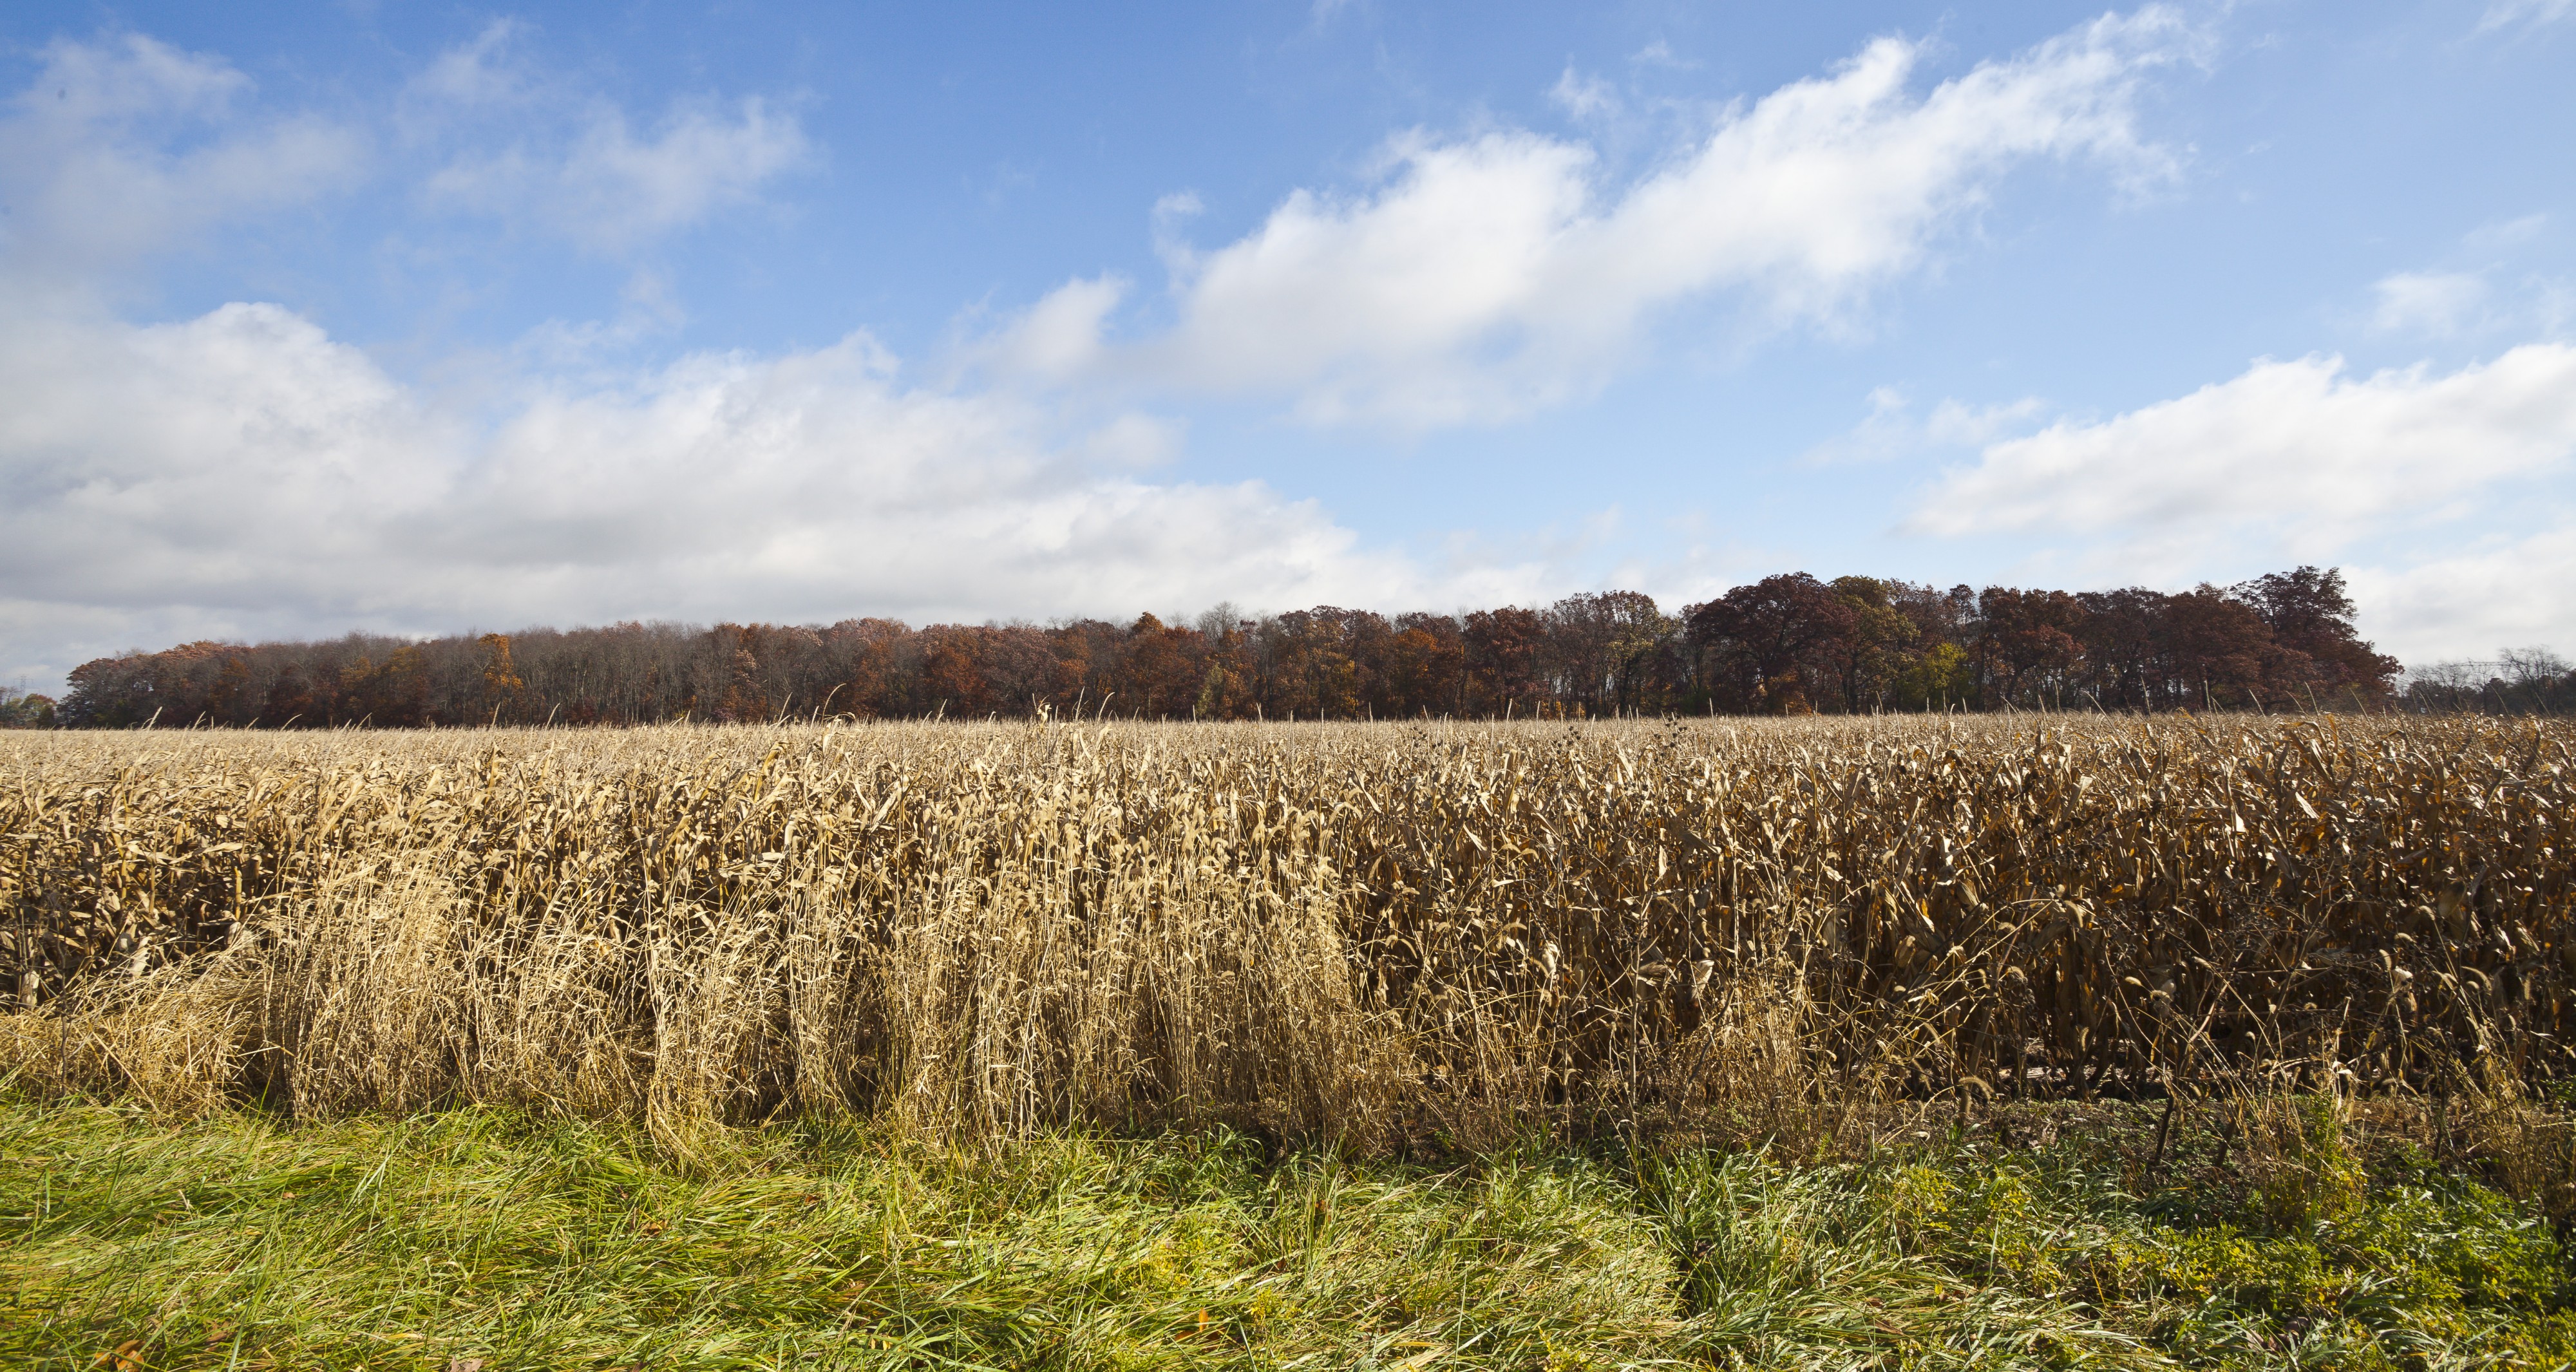 Campo de maiz, Walker, Indiana, Estados Unidos, 2012-10-20, DD 02